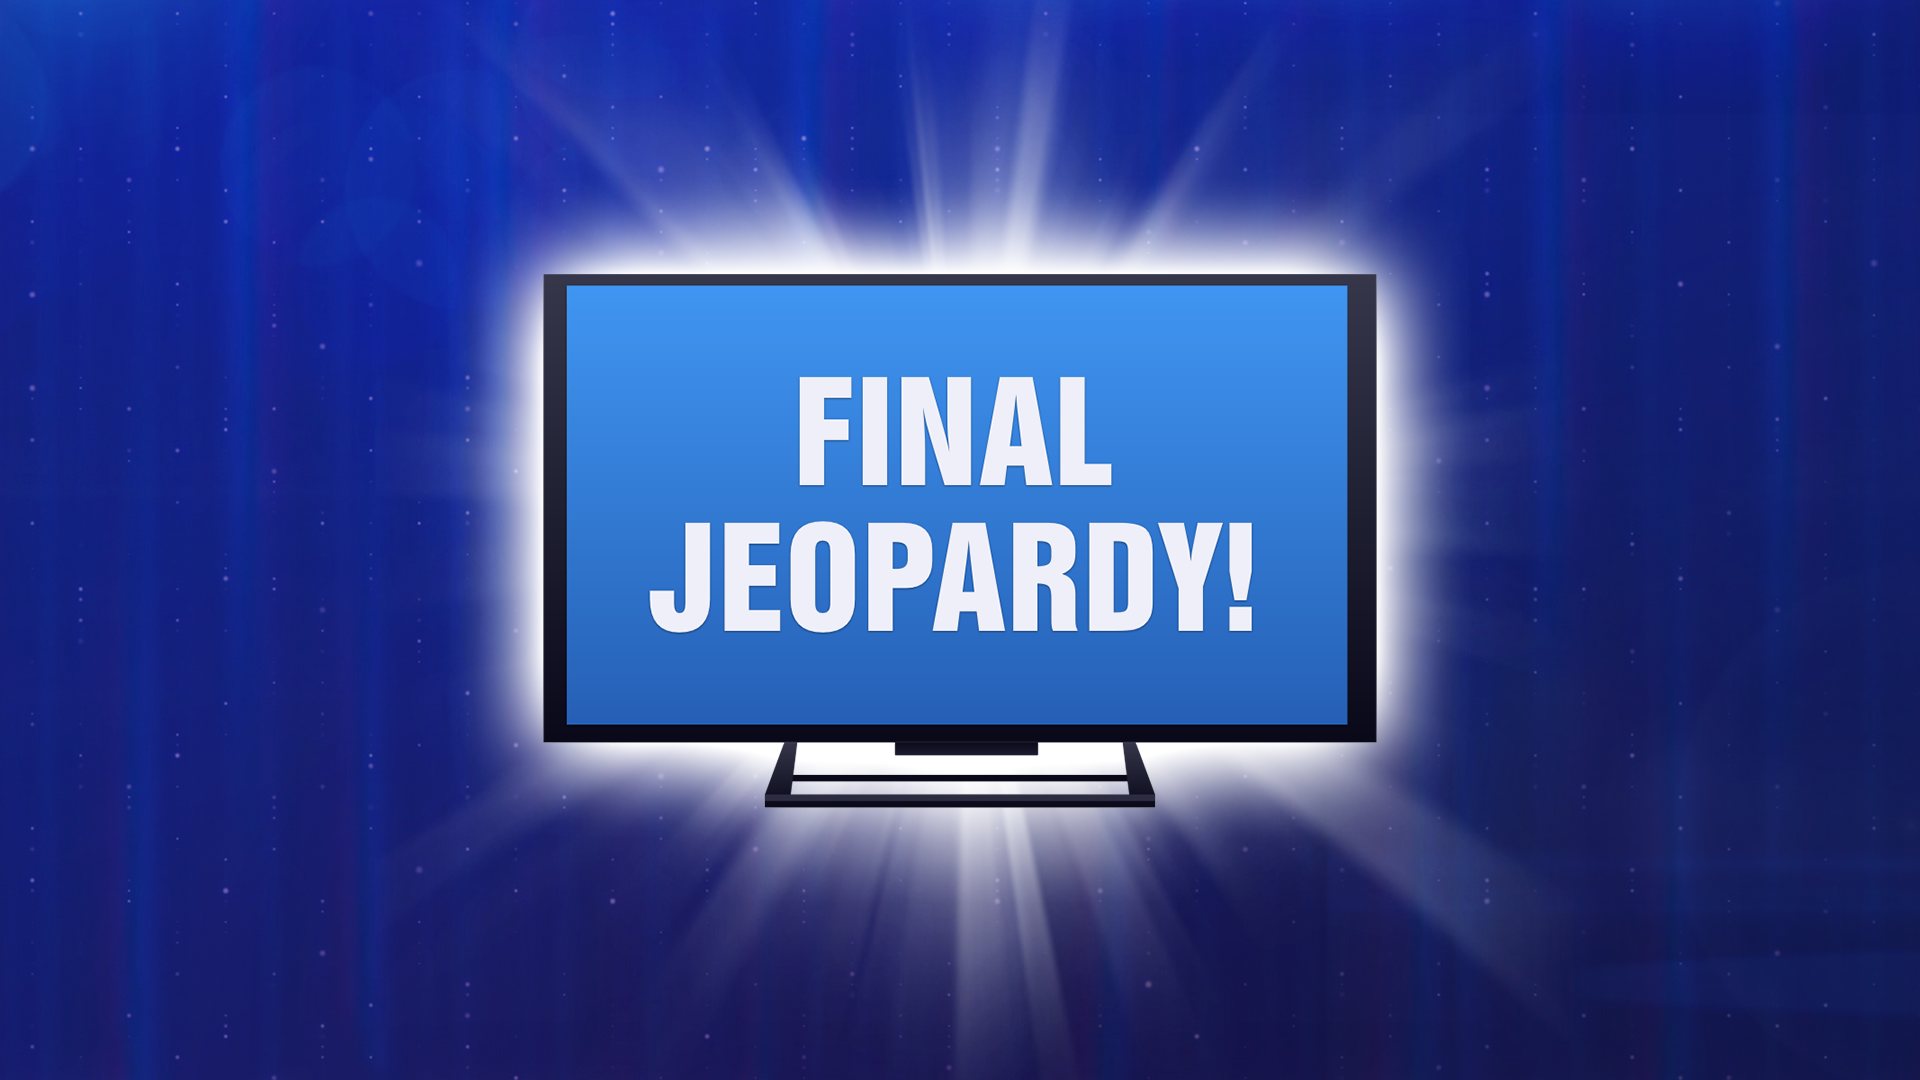 Final Jeopardy!